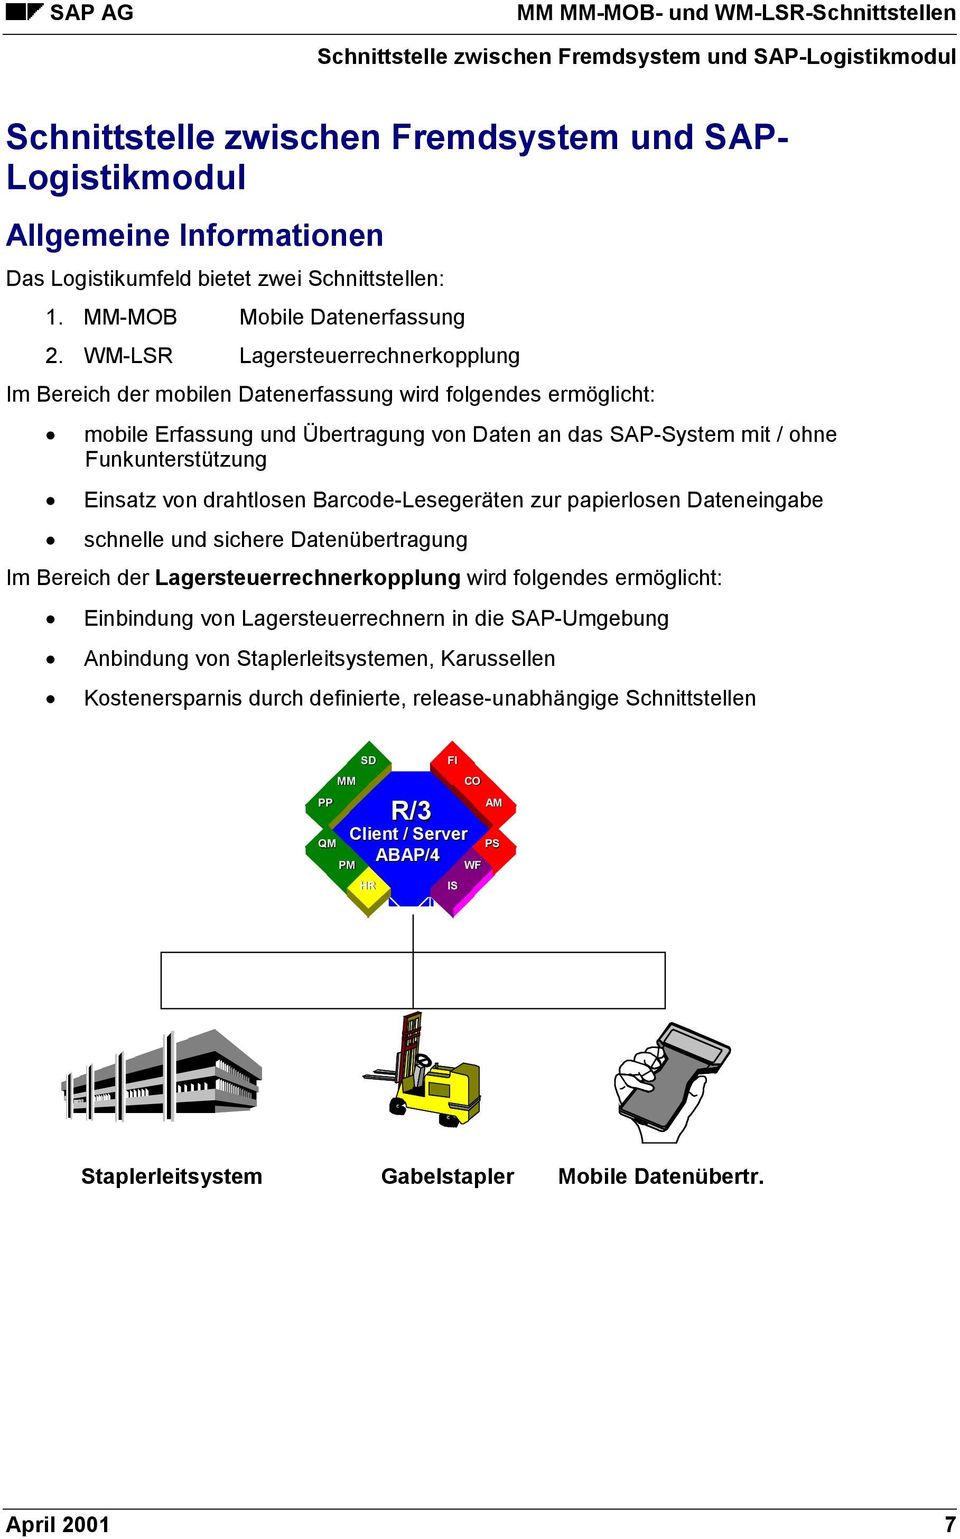 WM-LSR Lagersteuerrechnerkopplung Im Bereich der mobilen Datenerfassung wird folgendes ermöglicht: mobile Erfassung und Übertragung von Daten an das SAP-System mit / ohne Funkunterstützung Einsatz